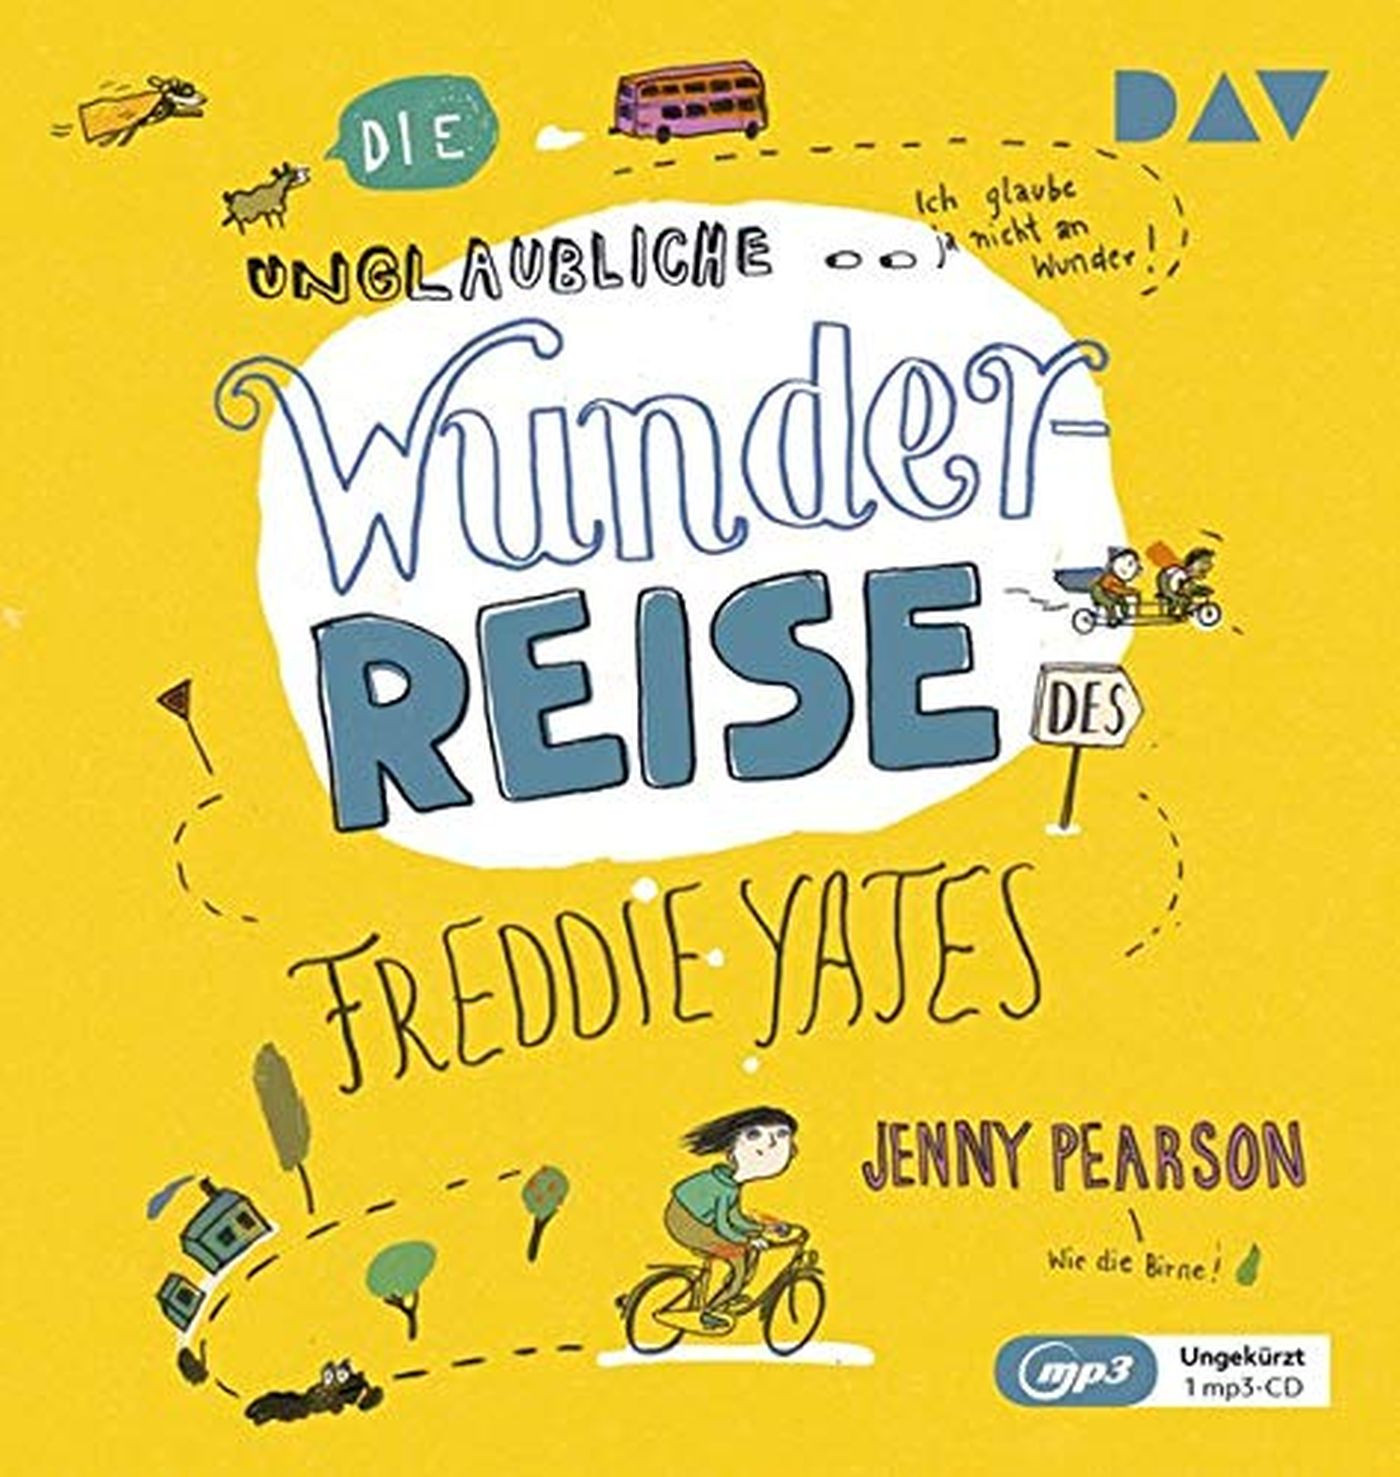 Jenny Pearson - Die unglaubliche Wunderreise des Freddie Yates